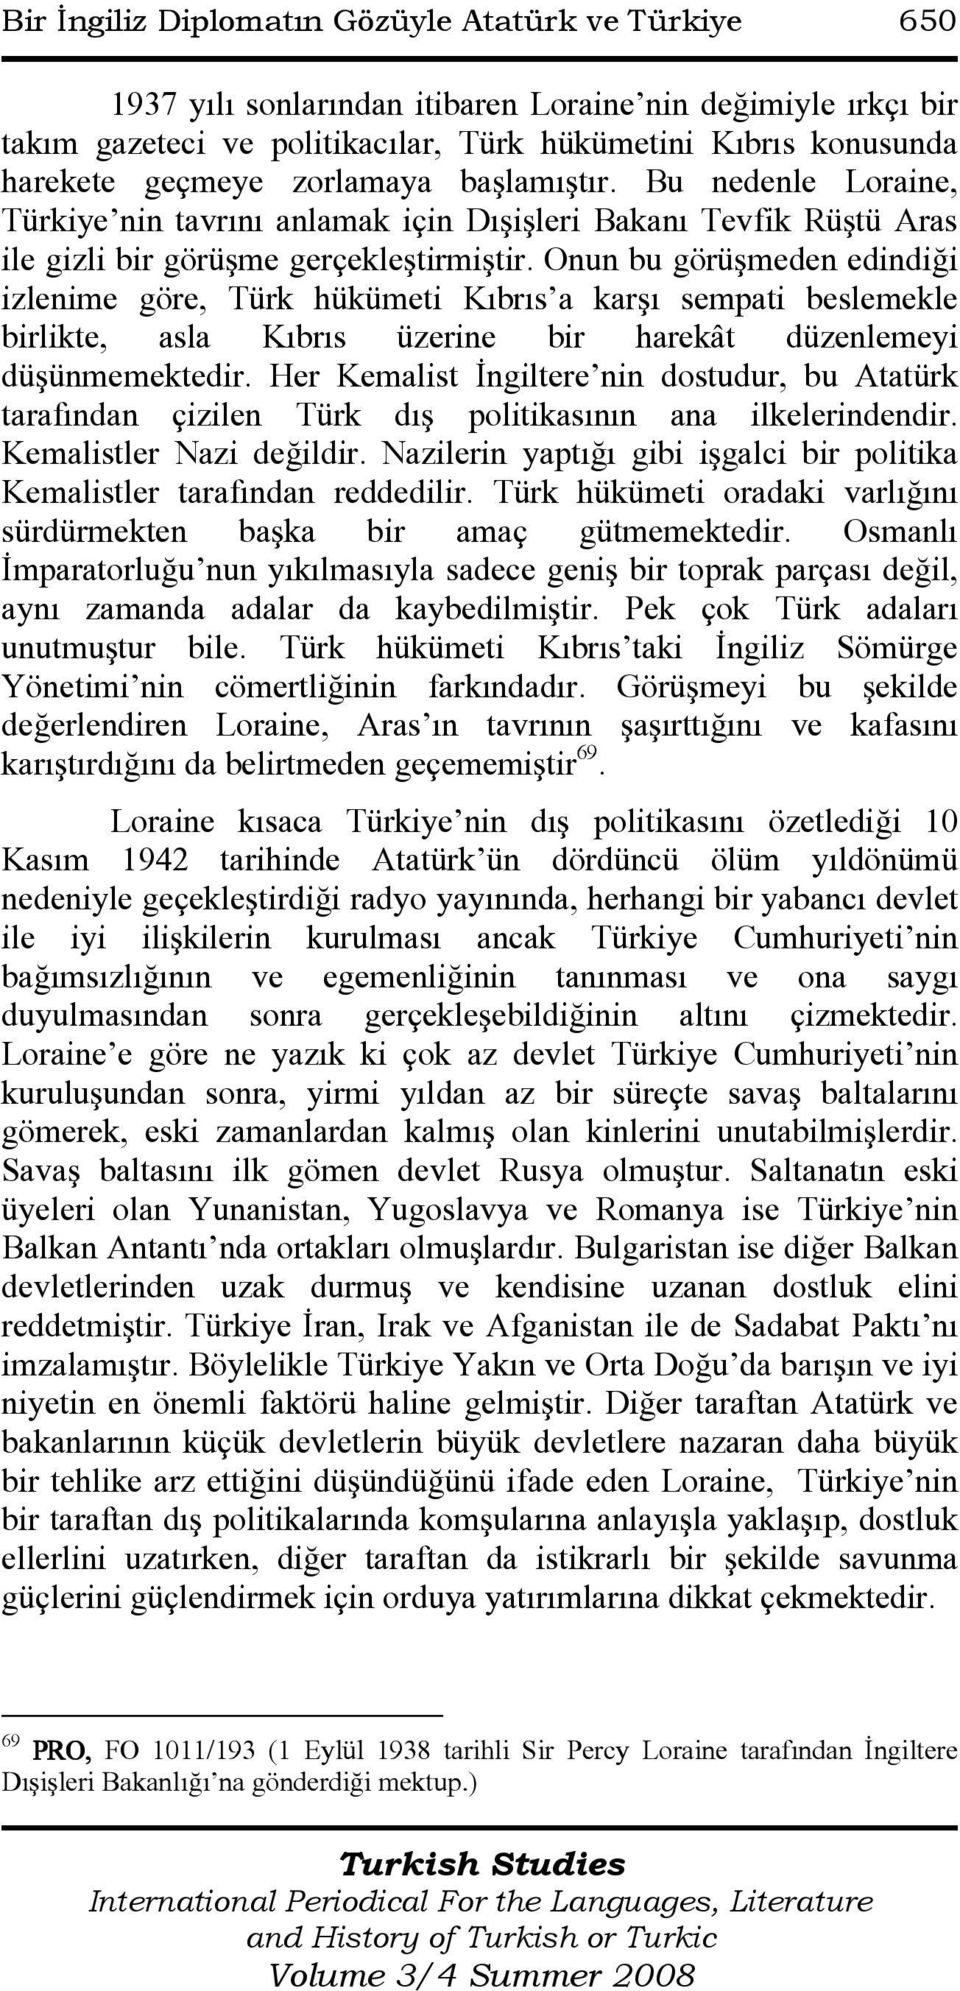 Onun bu görüşmeden edindiği izlenime göre, Türk hükümeti Kıbrıs a karşı sempati beslemekle birlikte, asla Kıbrıs üzerine bir harekât düzenlemeyi düşünmemektedir.